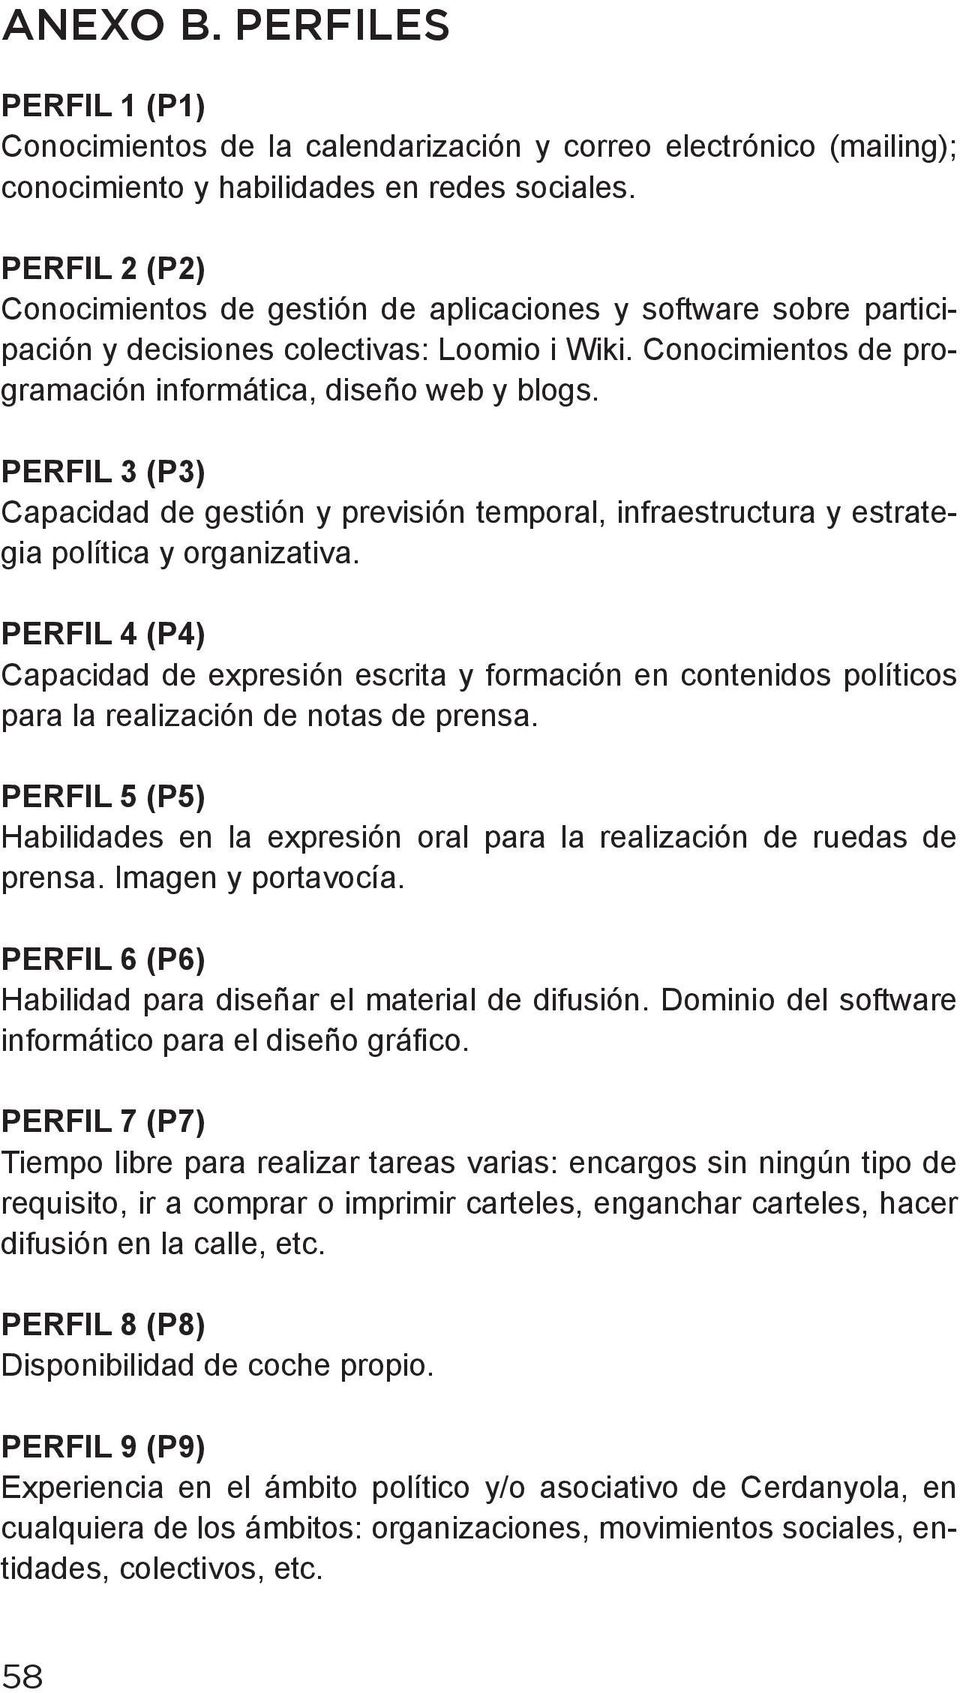 PERFIL 3 (P3) Capacidad de gestión y previsión temporal, infraestructura y estrategia política y organizativa.